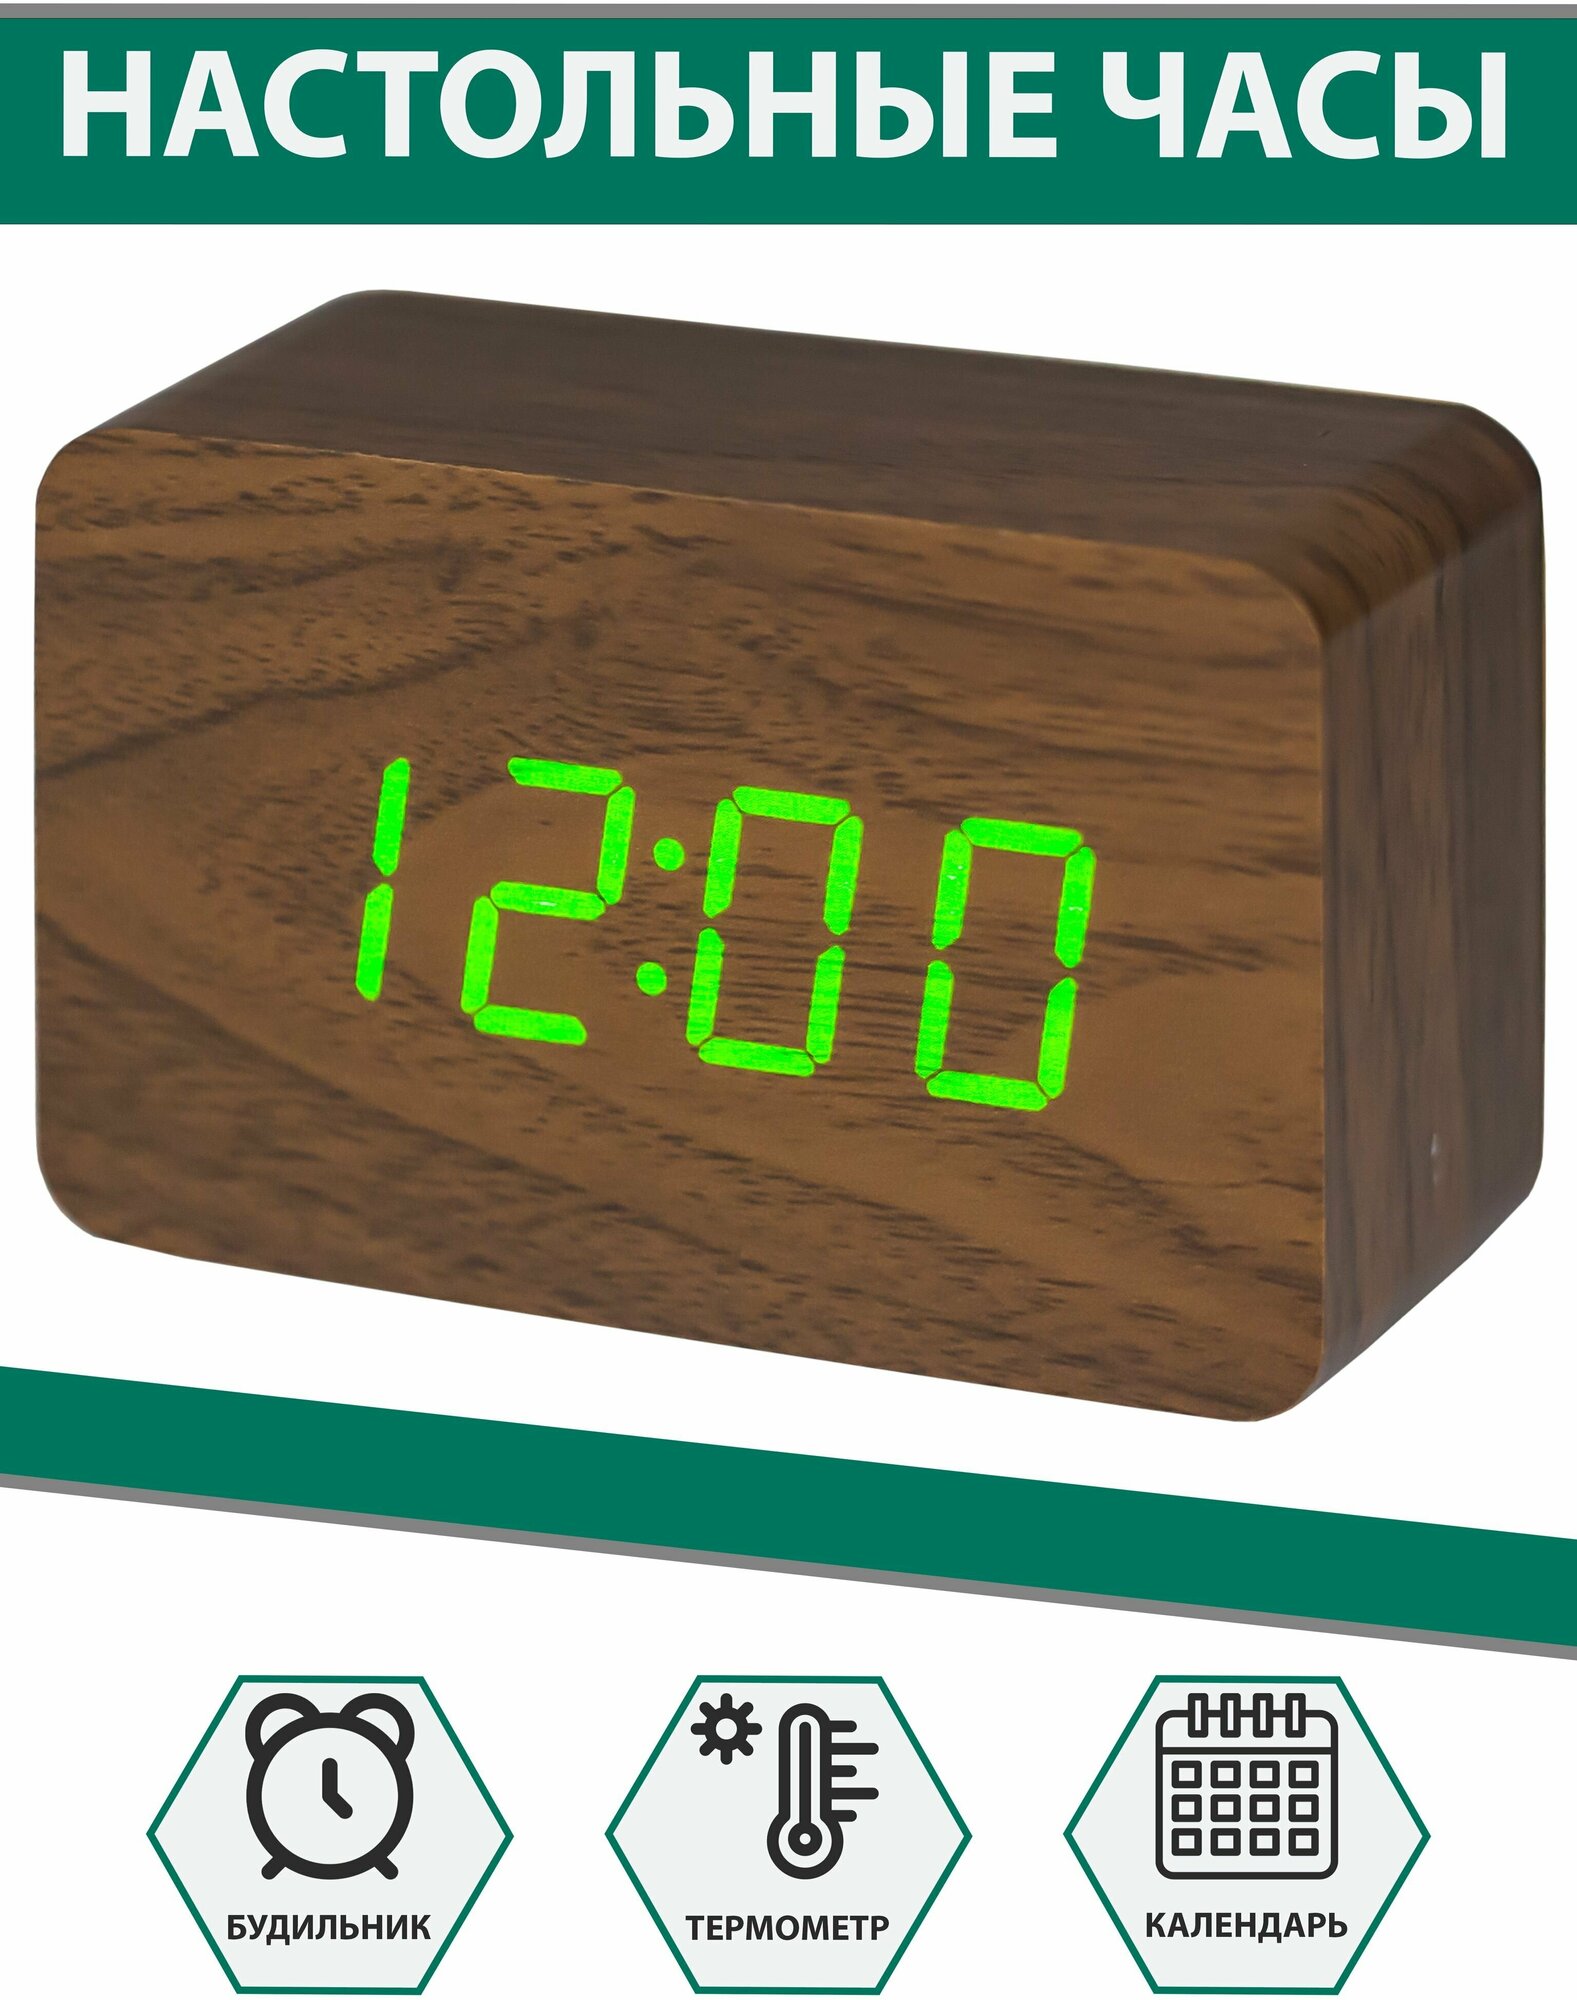 Часы электронные, стильные VST-863 (коричневое дерево, зеленые цифры)